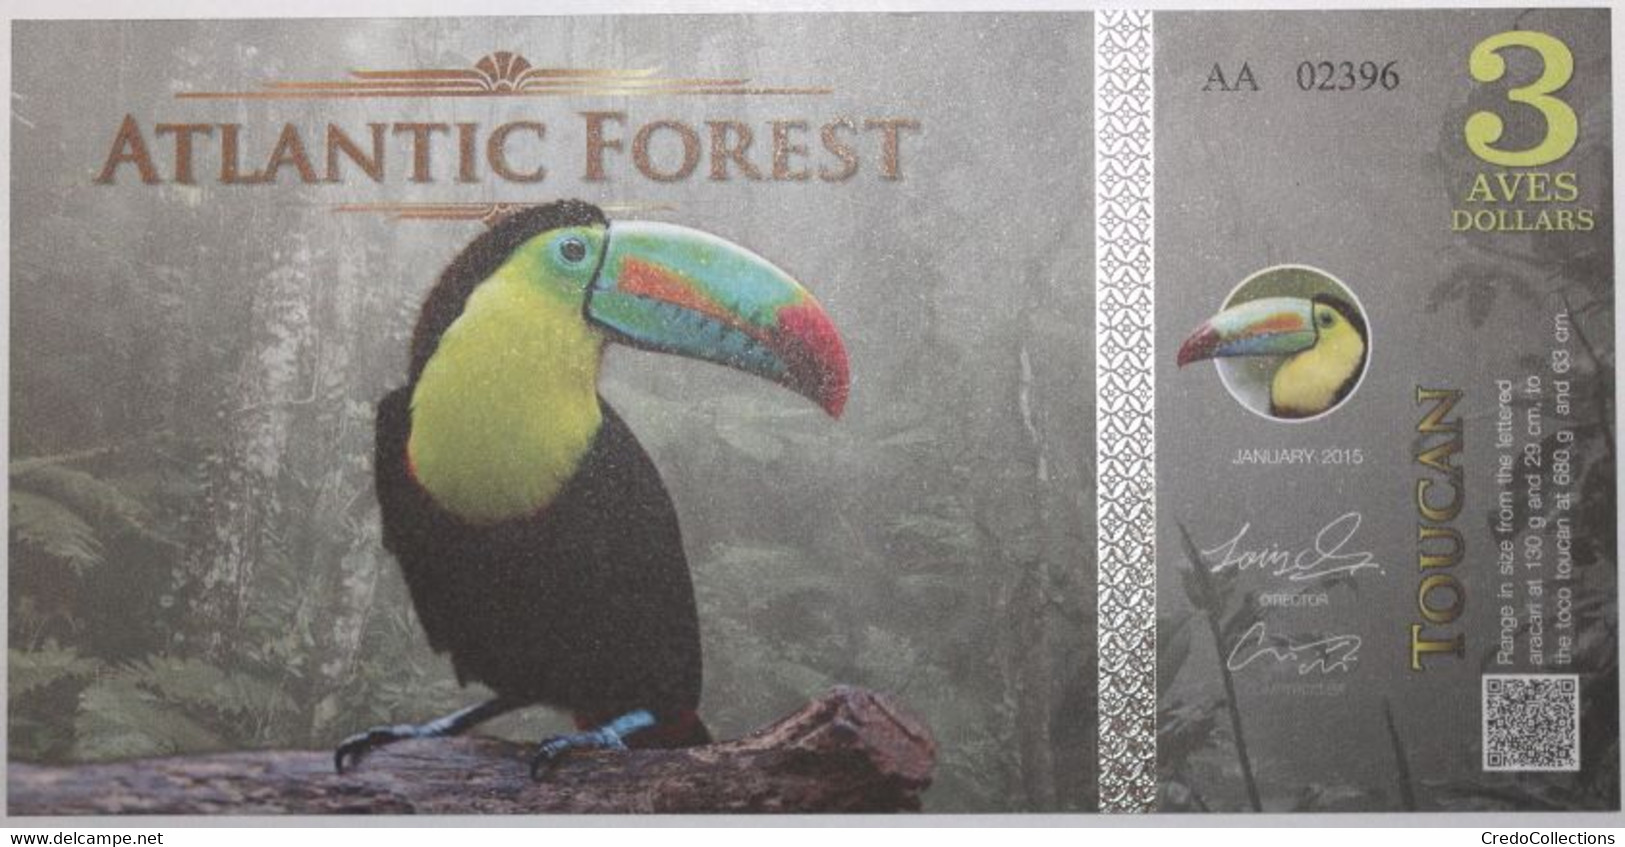 Atlantic Forest - 3 Aves Dollars - 2015 - PICK ATL-3 - NEUF - Ficción & Especímenes